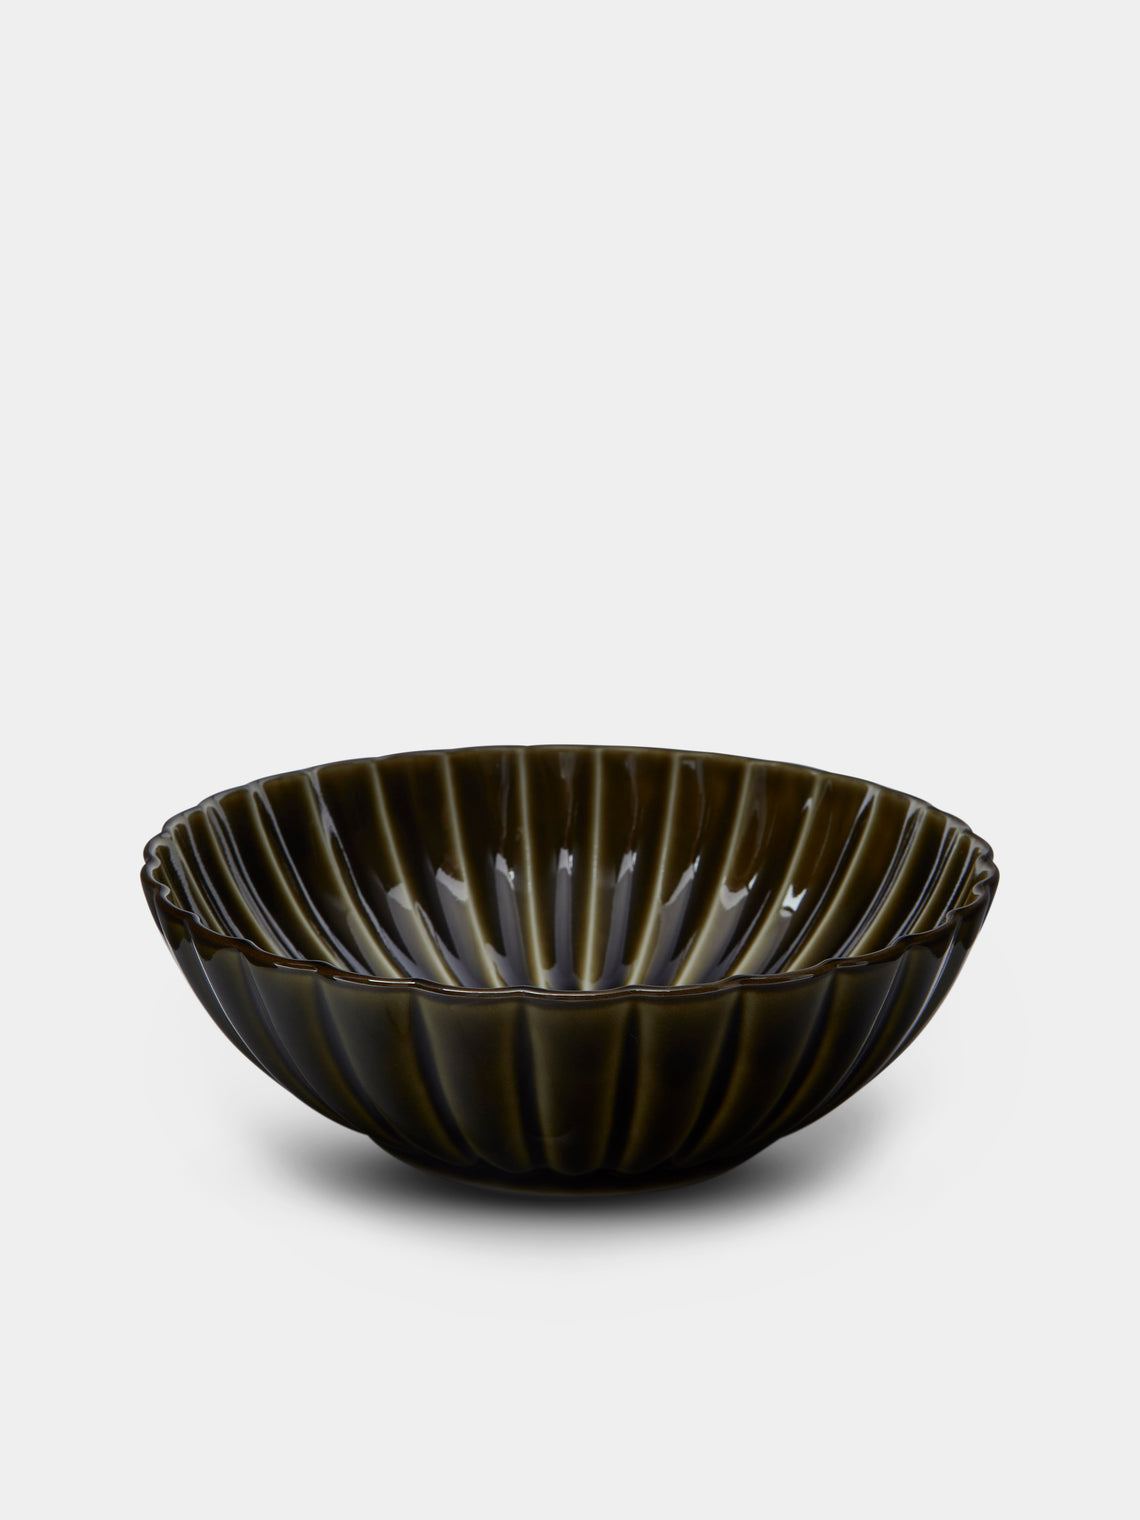 Kaneko Kohyo - Giyaman Urushi Ceramic Serving Bowl - Green - ABASK - 